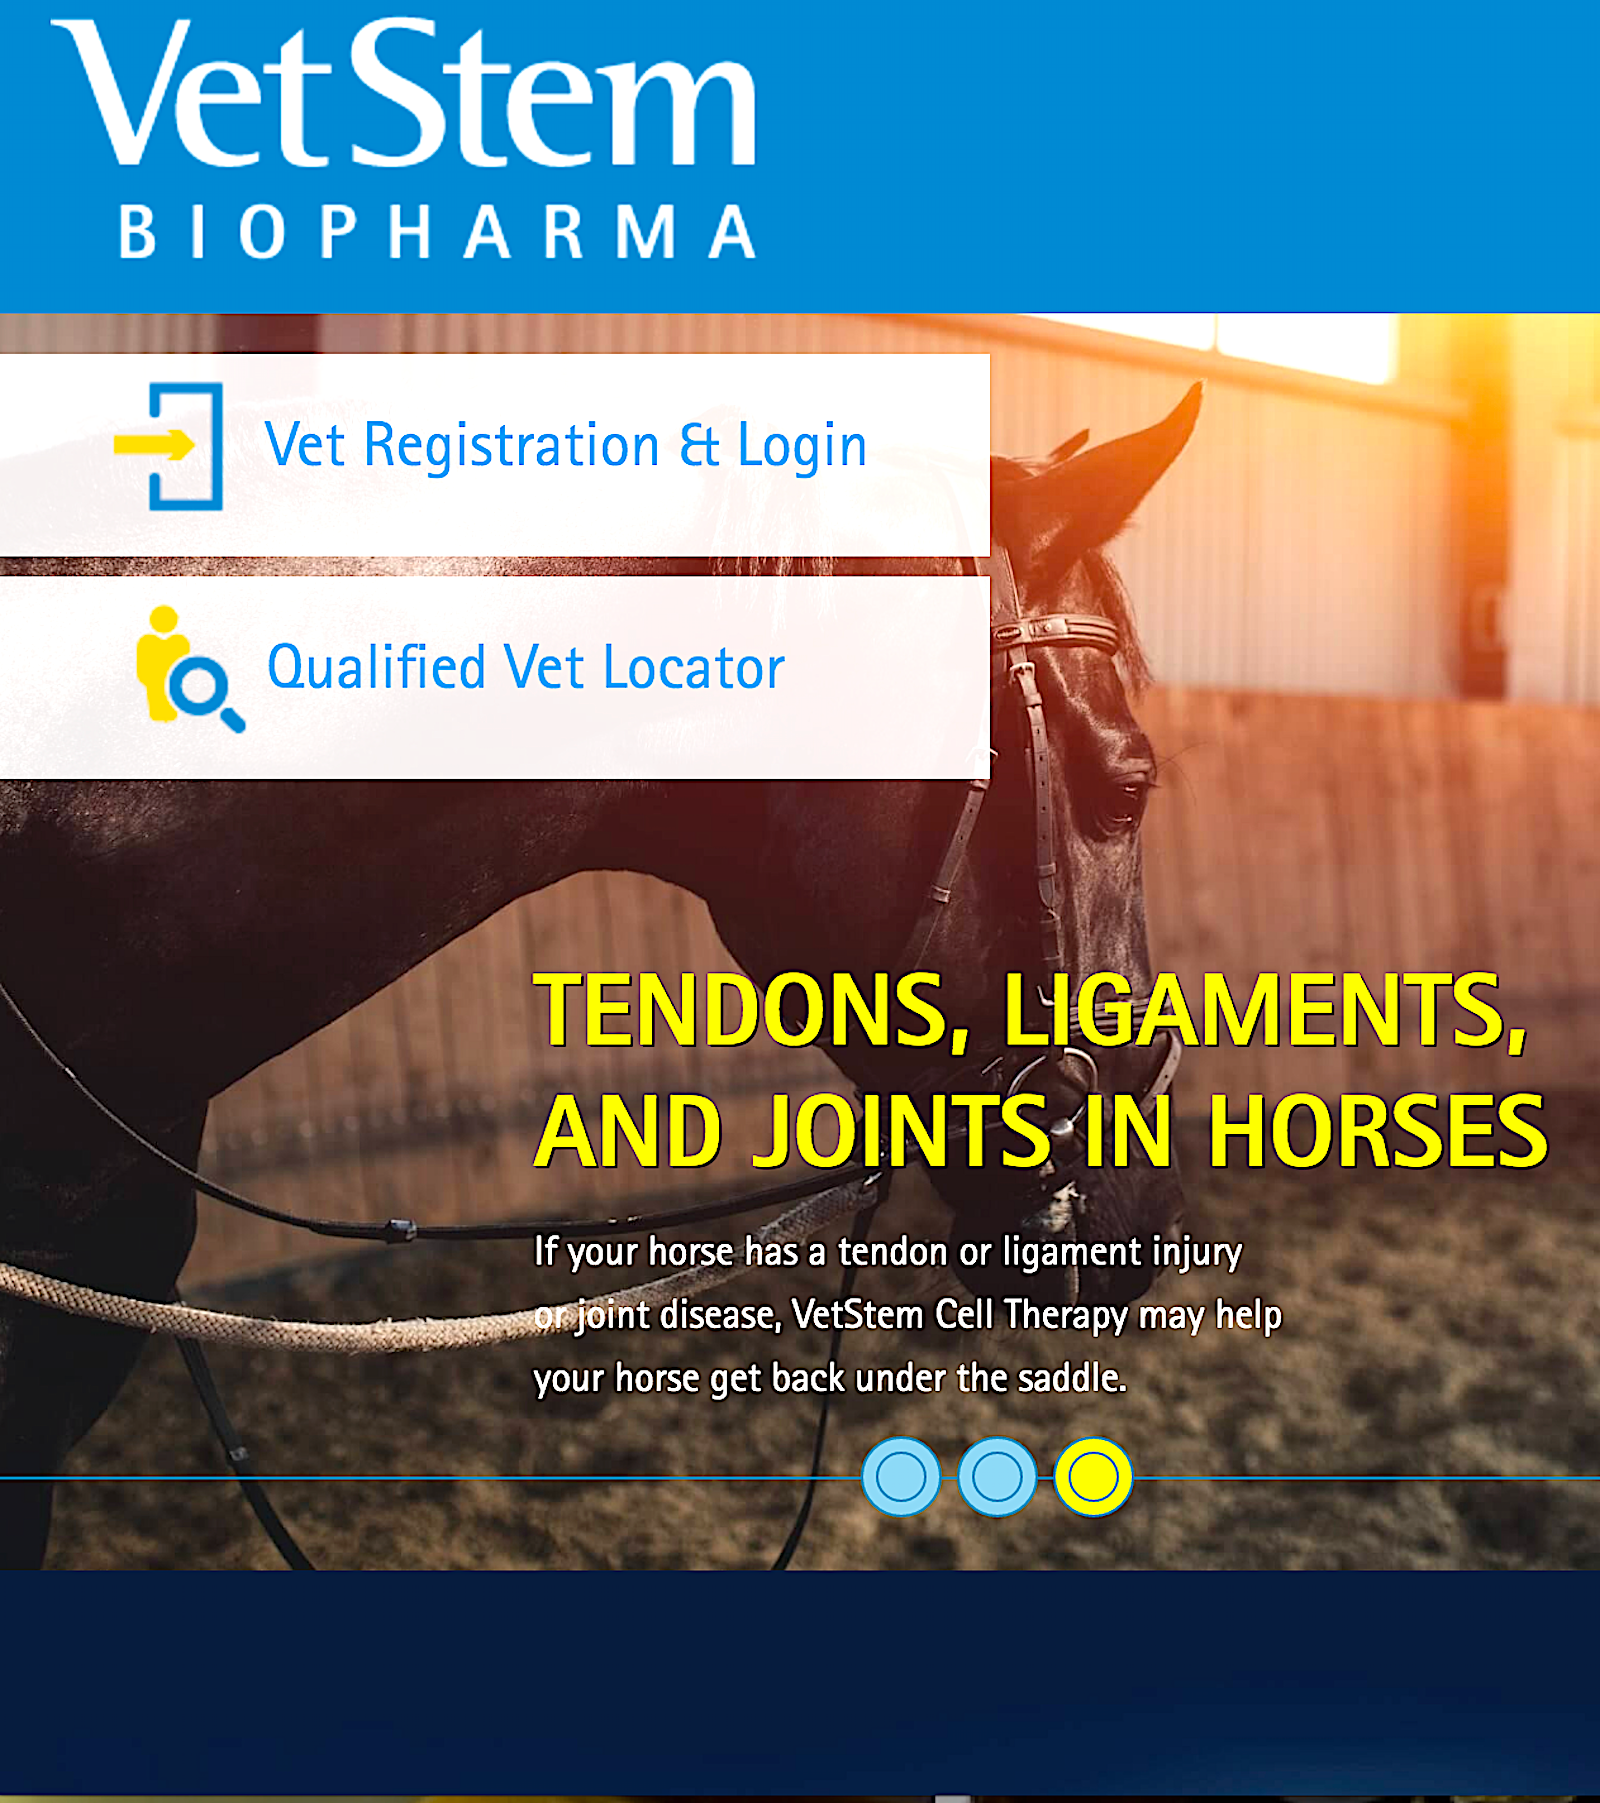 VETSTEM BIOPHARMA: leading the way in regenerative veterinary medicine - Vital Vet